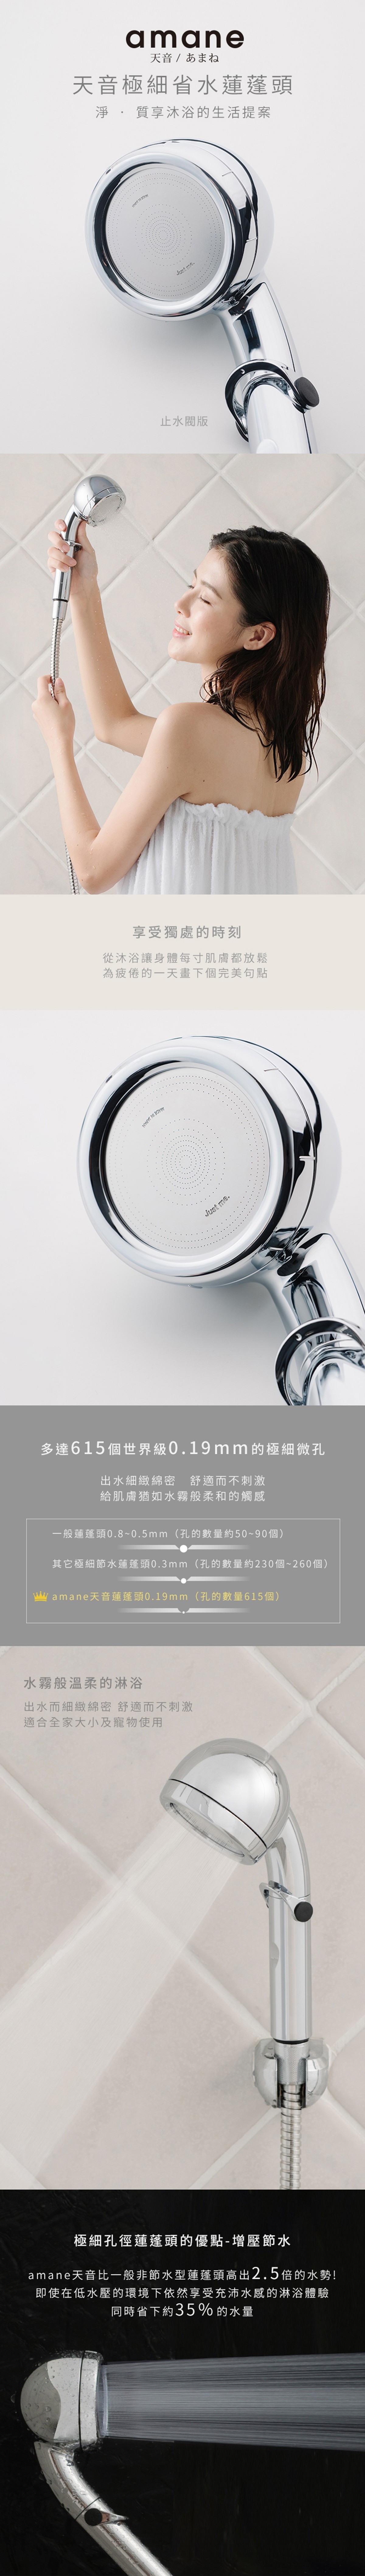 amane 天音極細省水高壓淋浴蓮蓬頭(止水閥版)，全機日本製造，極細、省水、高壓的淋浴蓮蓬頭，給肌膚猶如水霧般柔和的觸感。